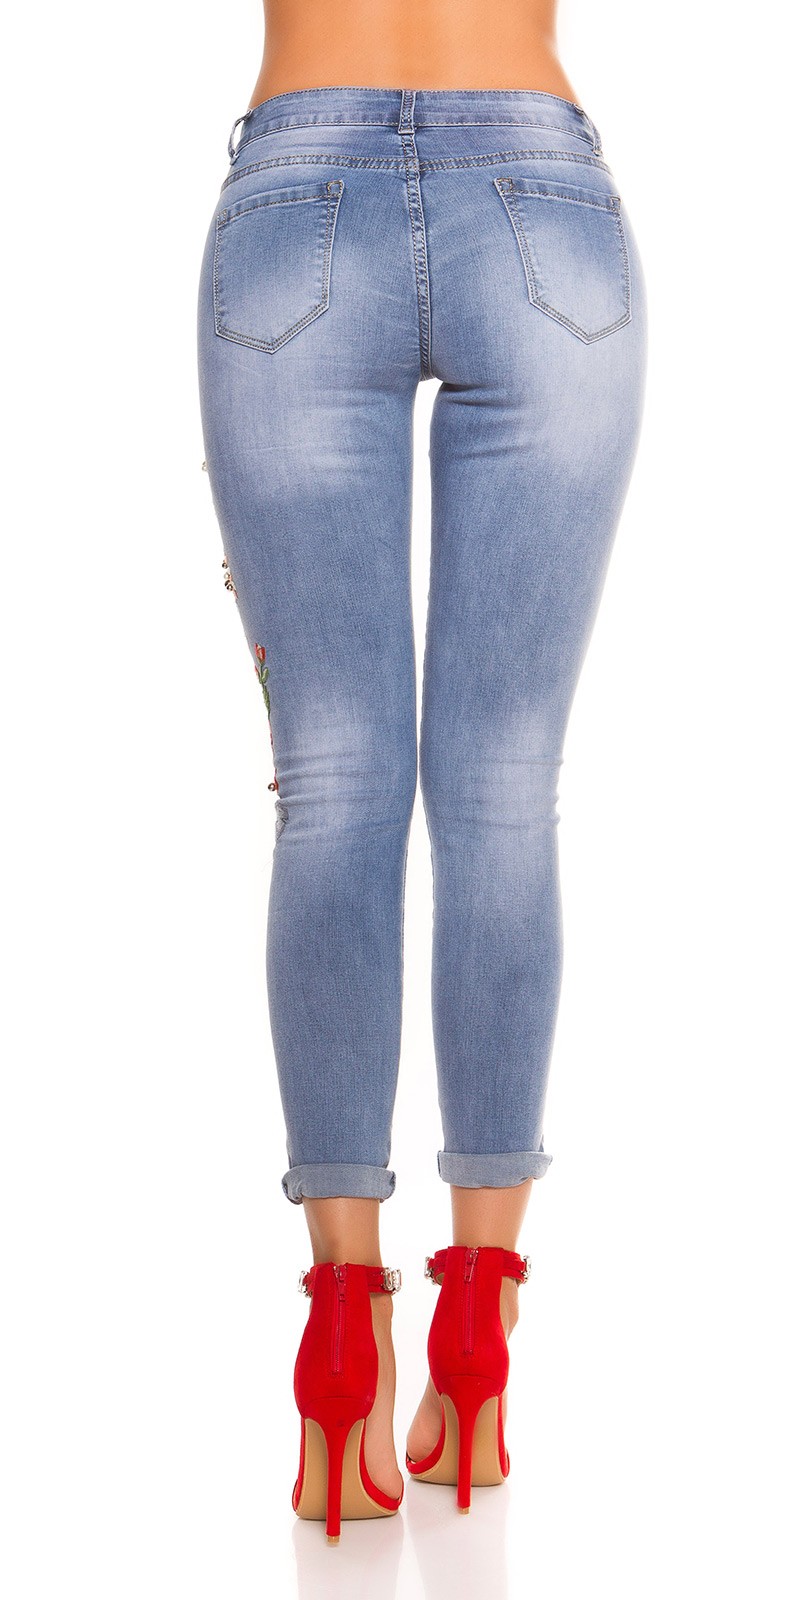 Jeans c/ bordado 1